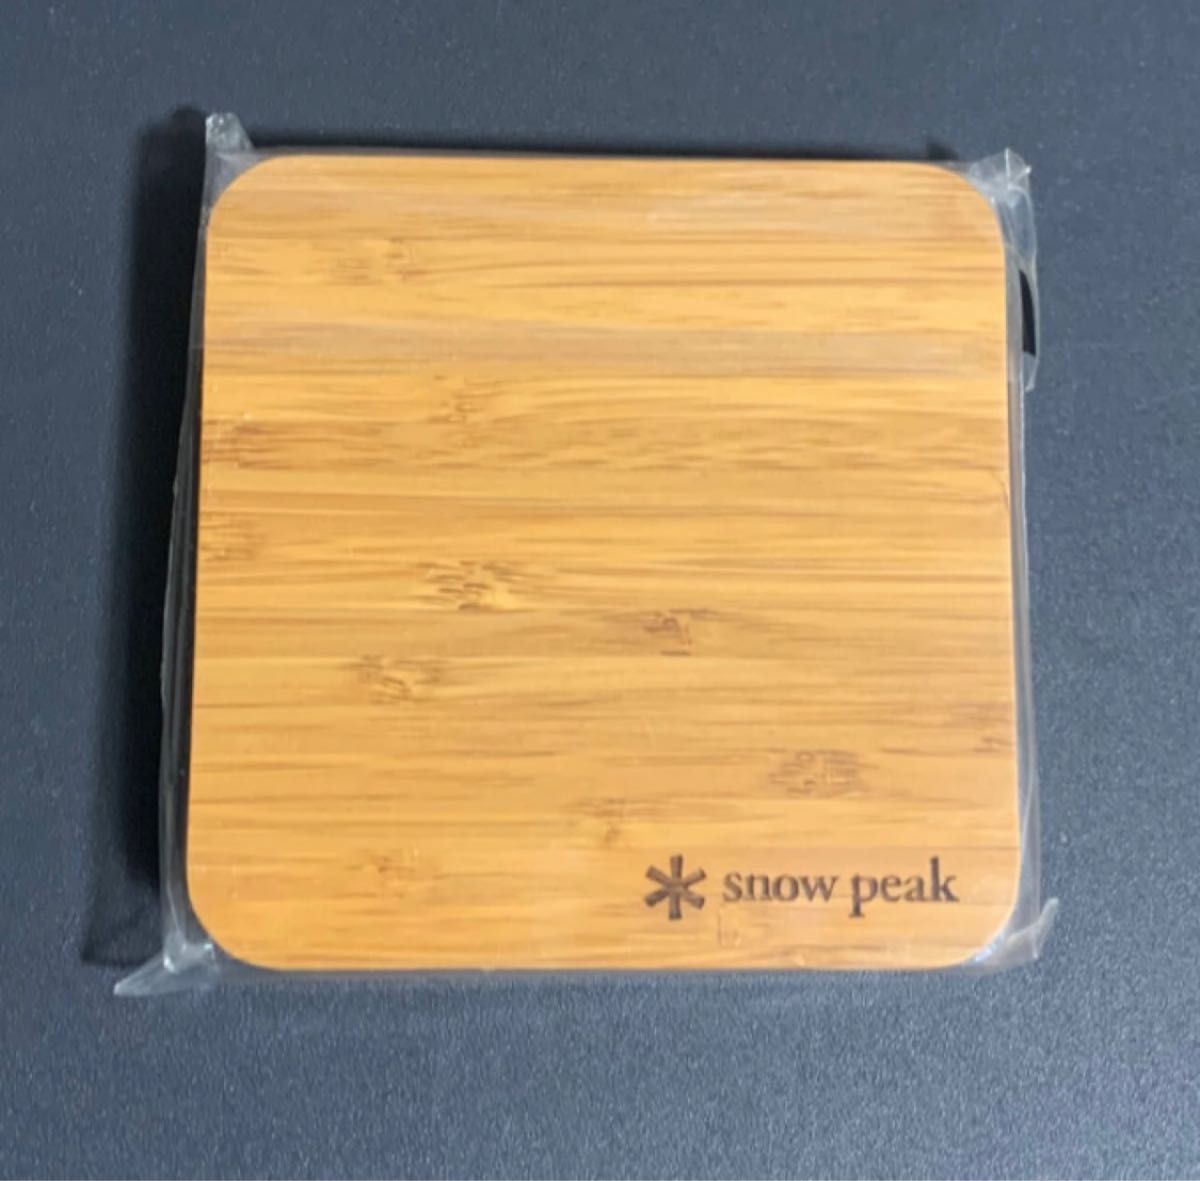 snowpeak 竹コースター 2pcs set 非売品